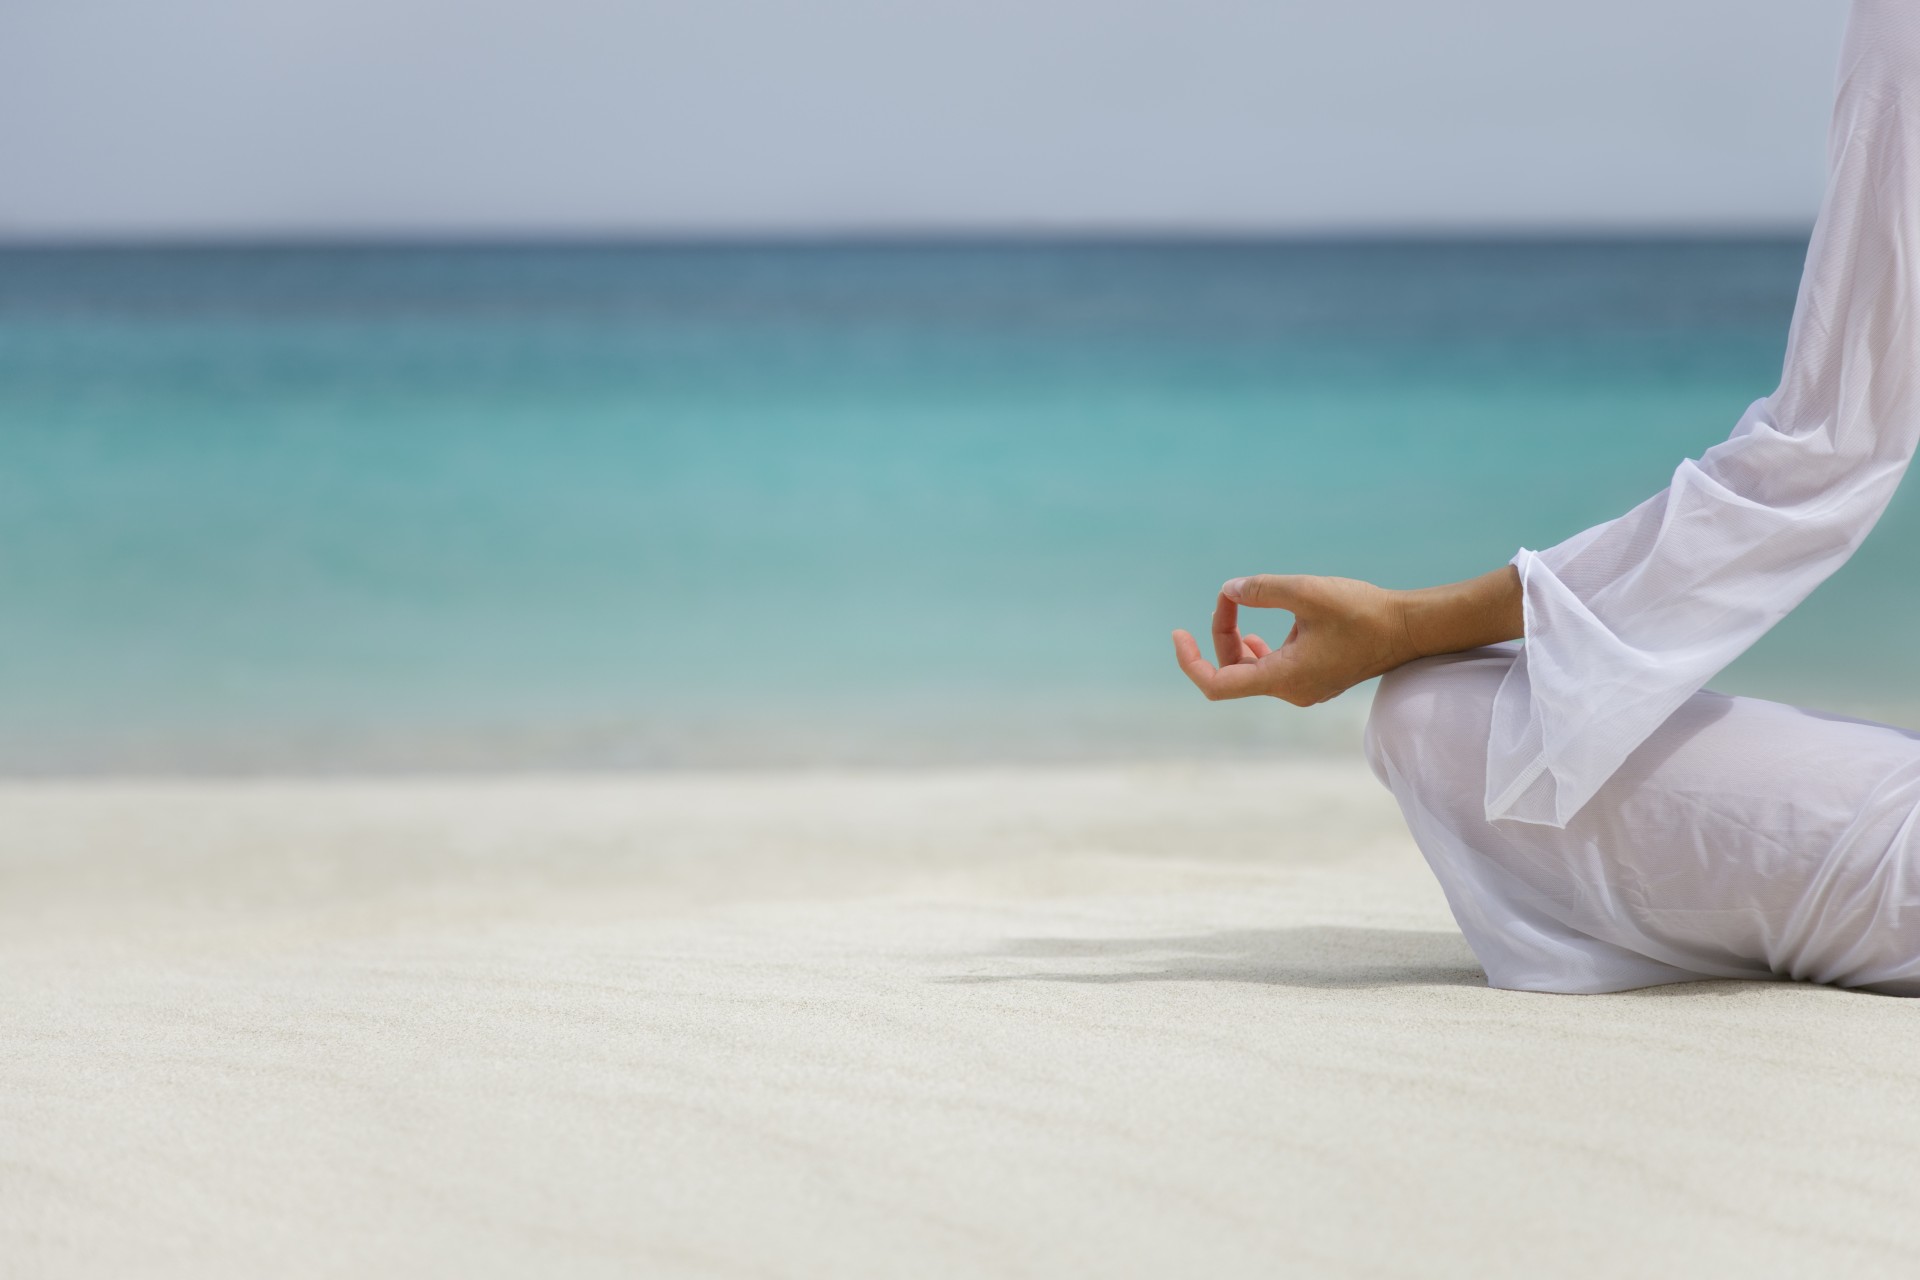 Релаксация женщин. Медитация на берегу моря. Медитация на море. Расслабление. Йога на море.